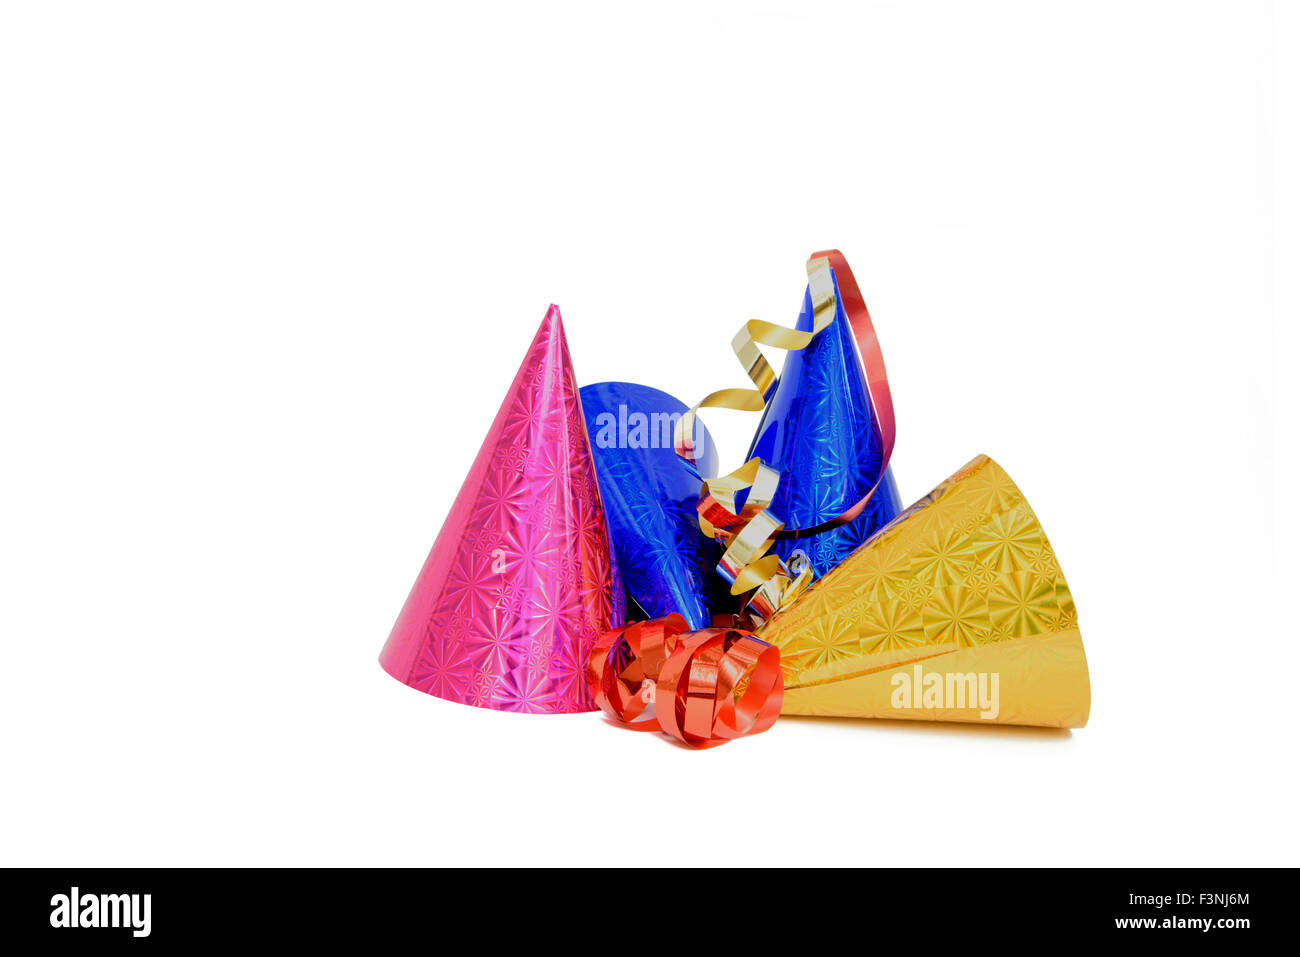 Rosa, azul y oro metálicos buscando sombreros de fiesta. Aisladas contra un fondo blanco. Foto de stock